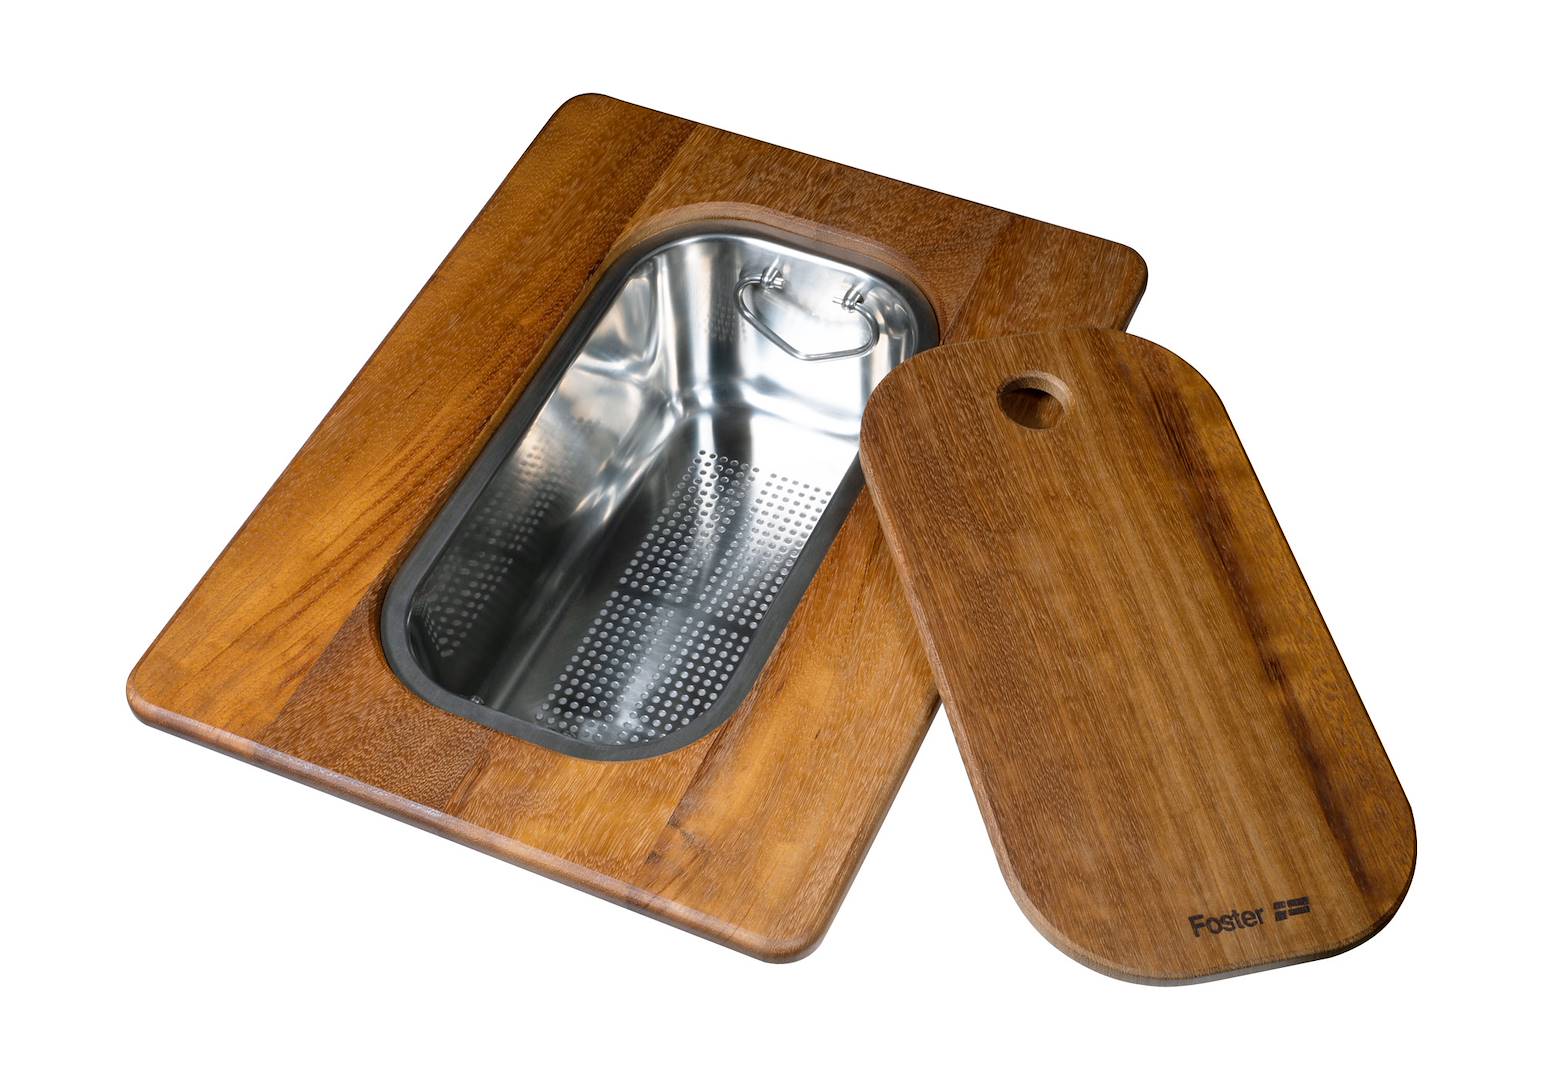 Tagliere Twin in legno Iroko con vaschetta scolapasta in acciaio inox